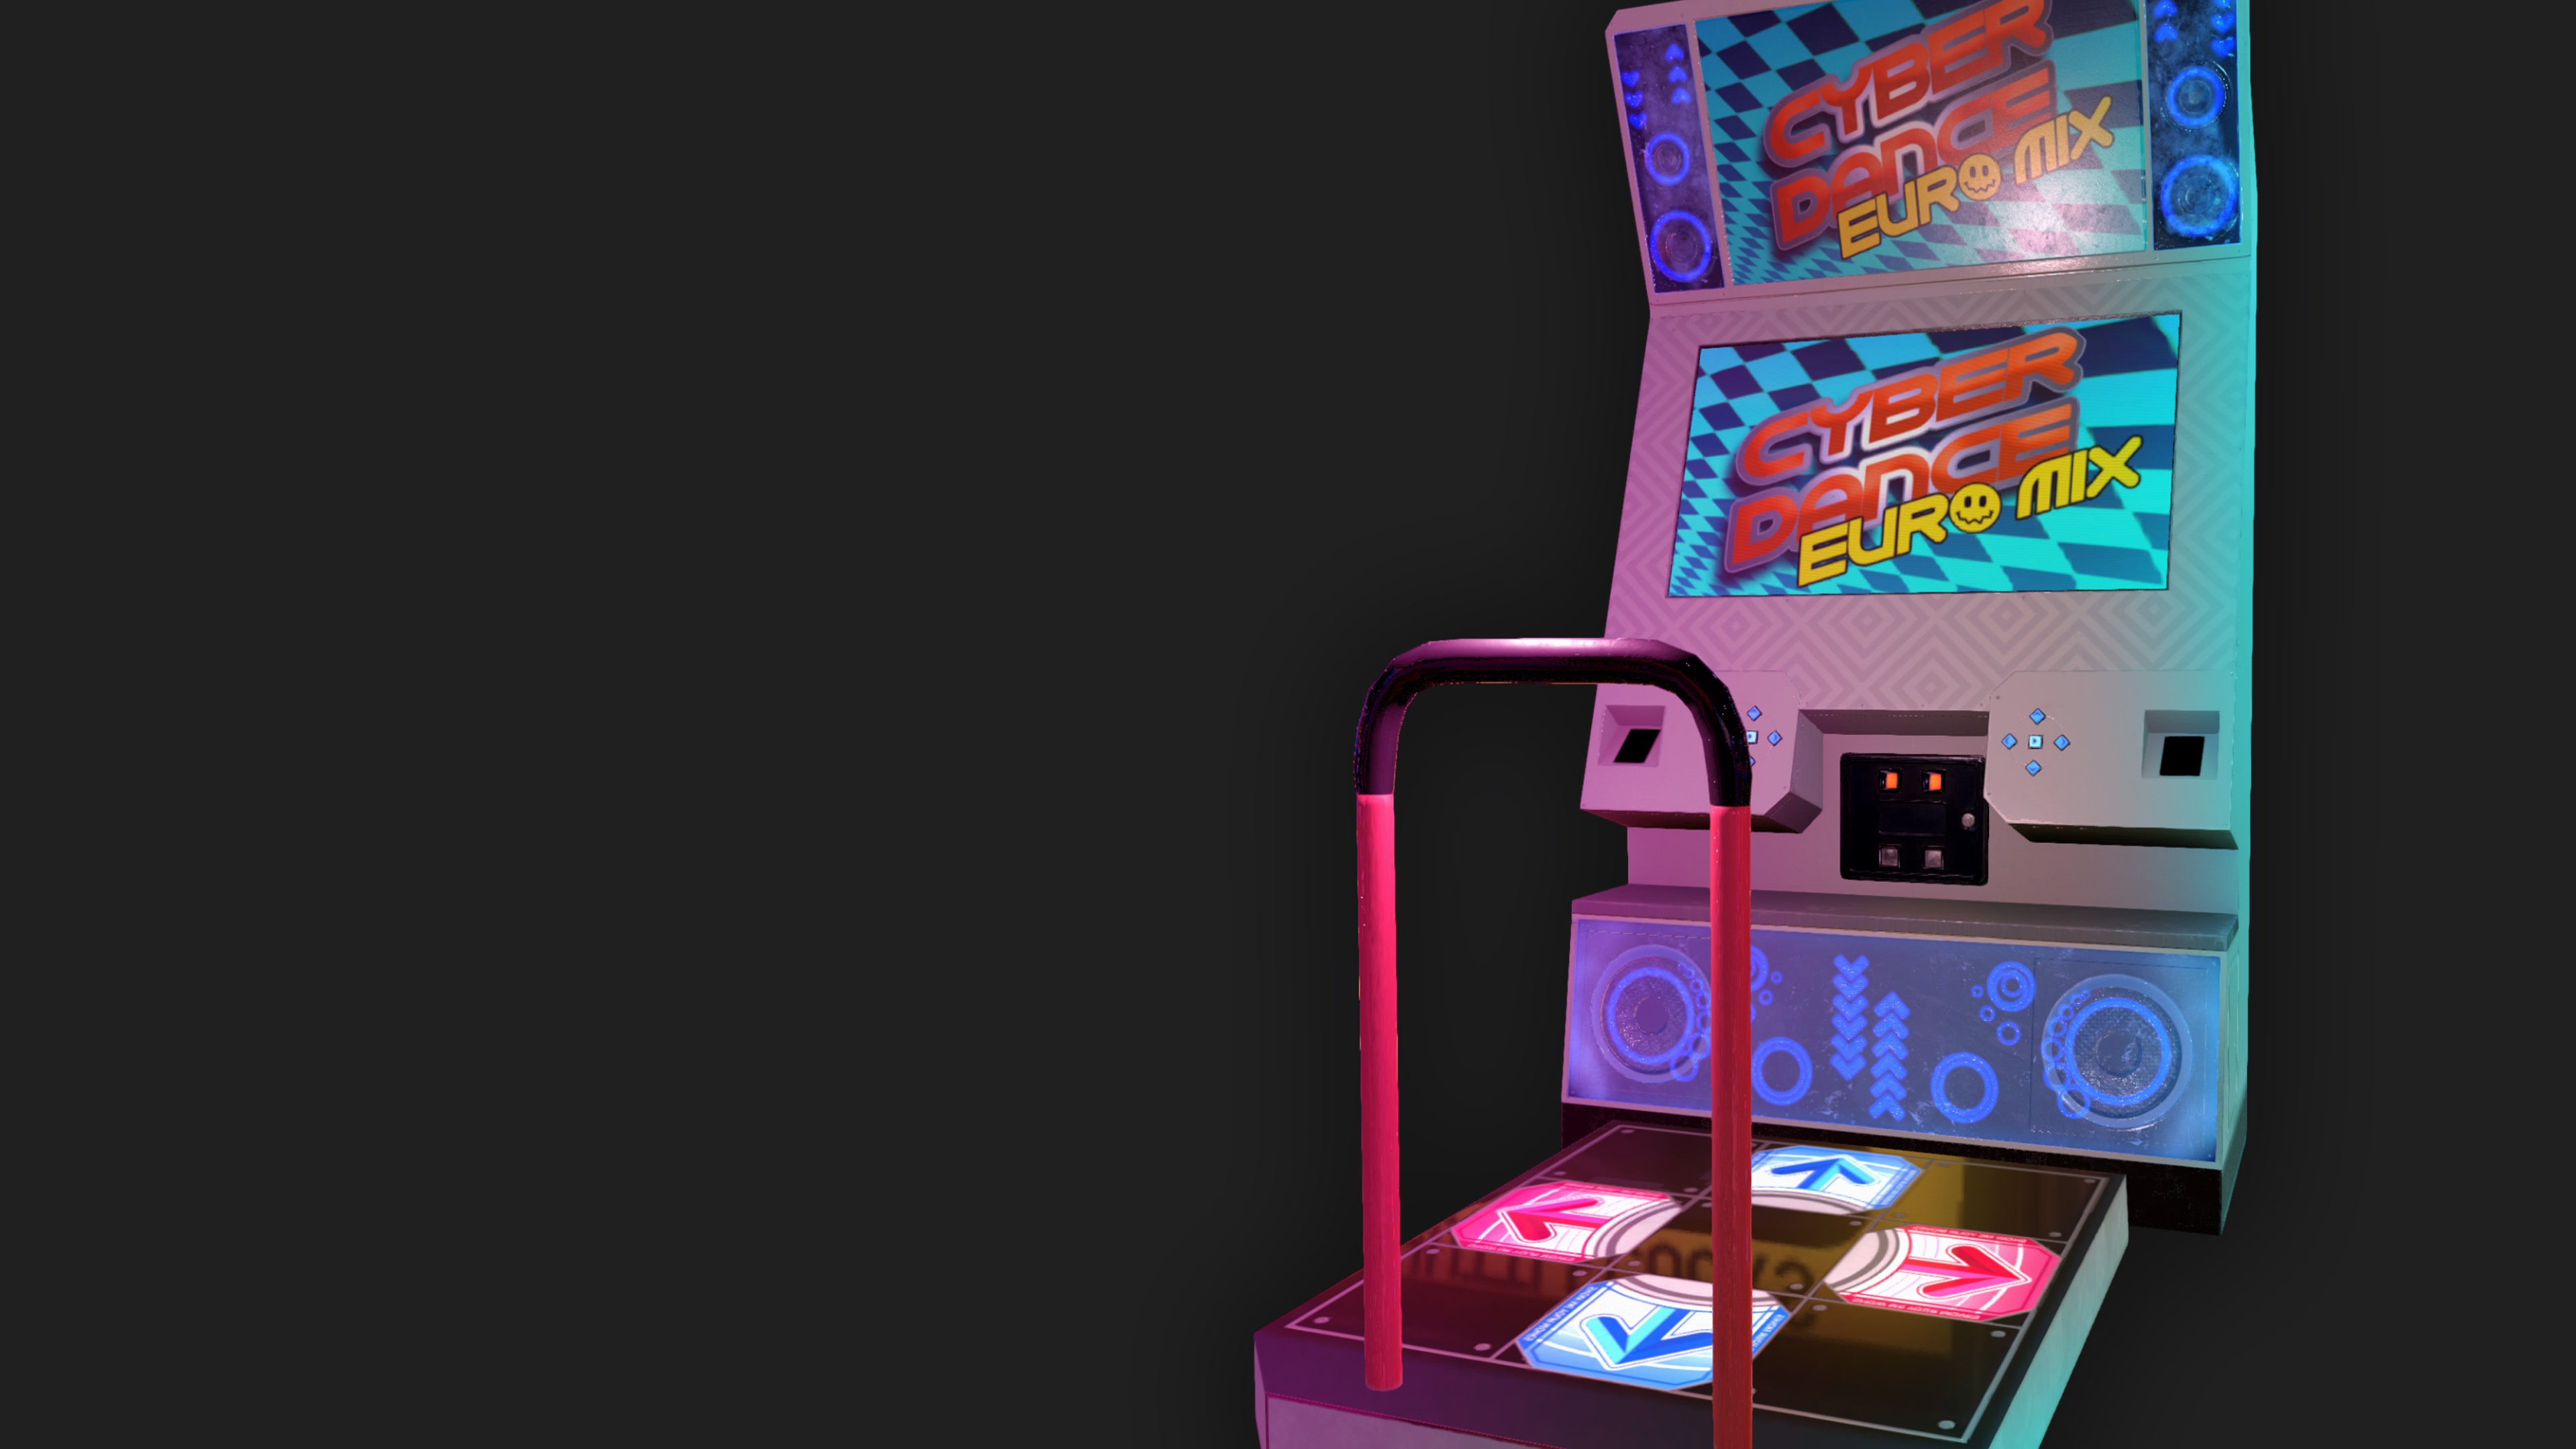 Arcade Paradise - Cyber Dance Euromix